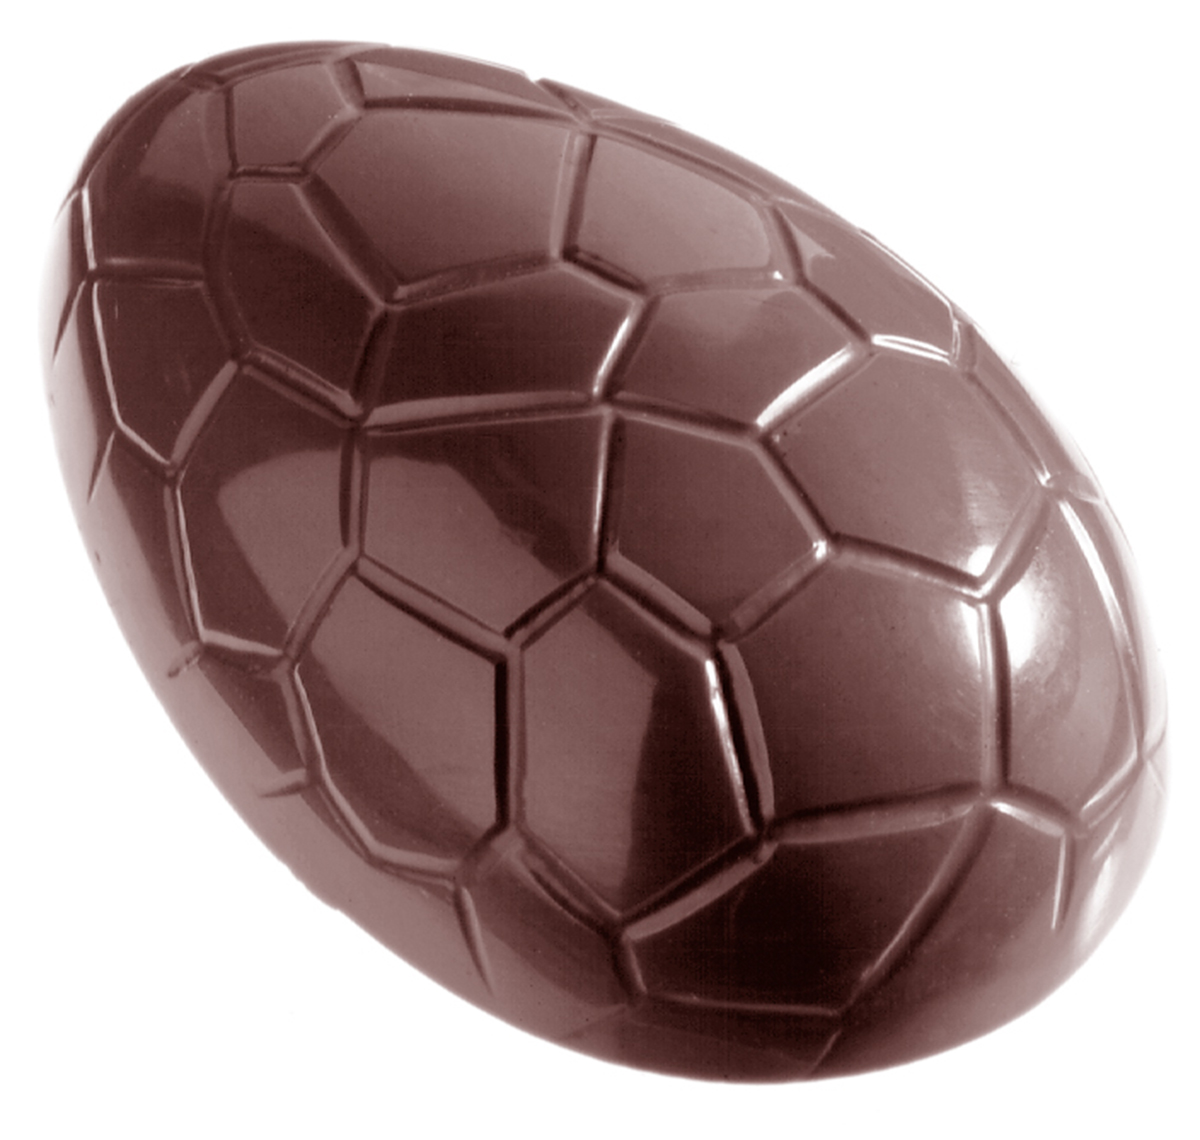 Se Professionel chokoladeform i polycarbonat - Påskeæg 10cm CW2213 hos BageTid.dk